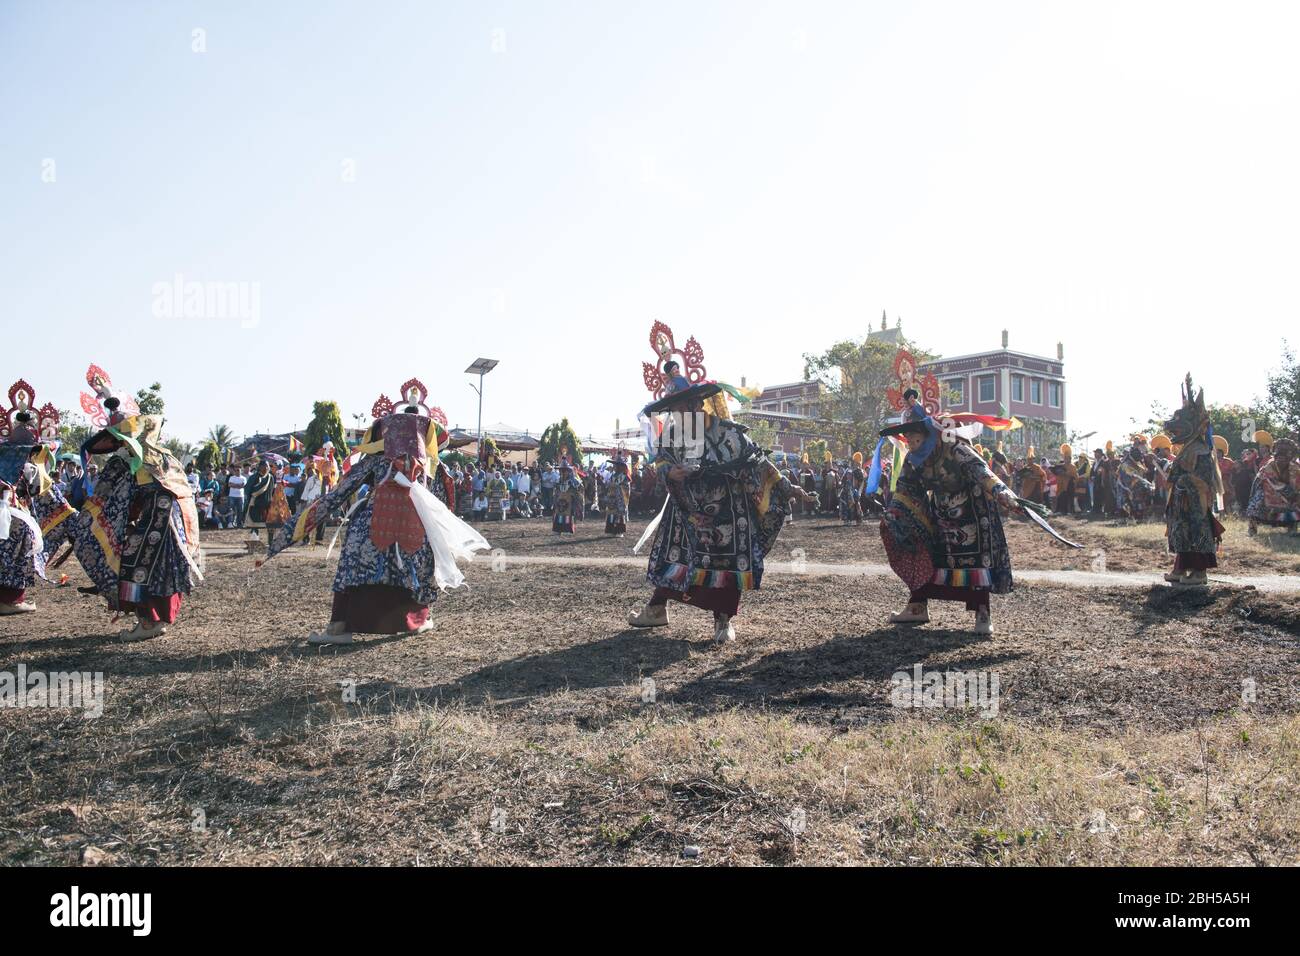 Cham Tanz mit Masken von tibetischen Mönchen während Losar (Tibetisches Neujahr) in Gurupura tibetischen Siedlung, Karnataka, Südindien. Stockfoto